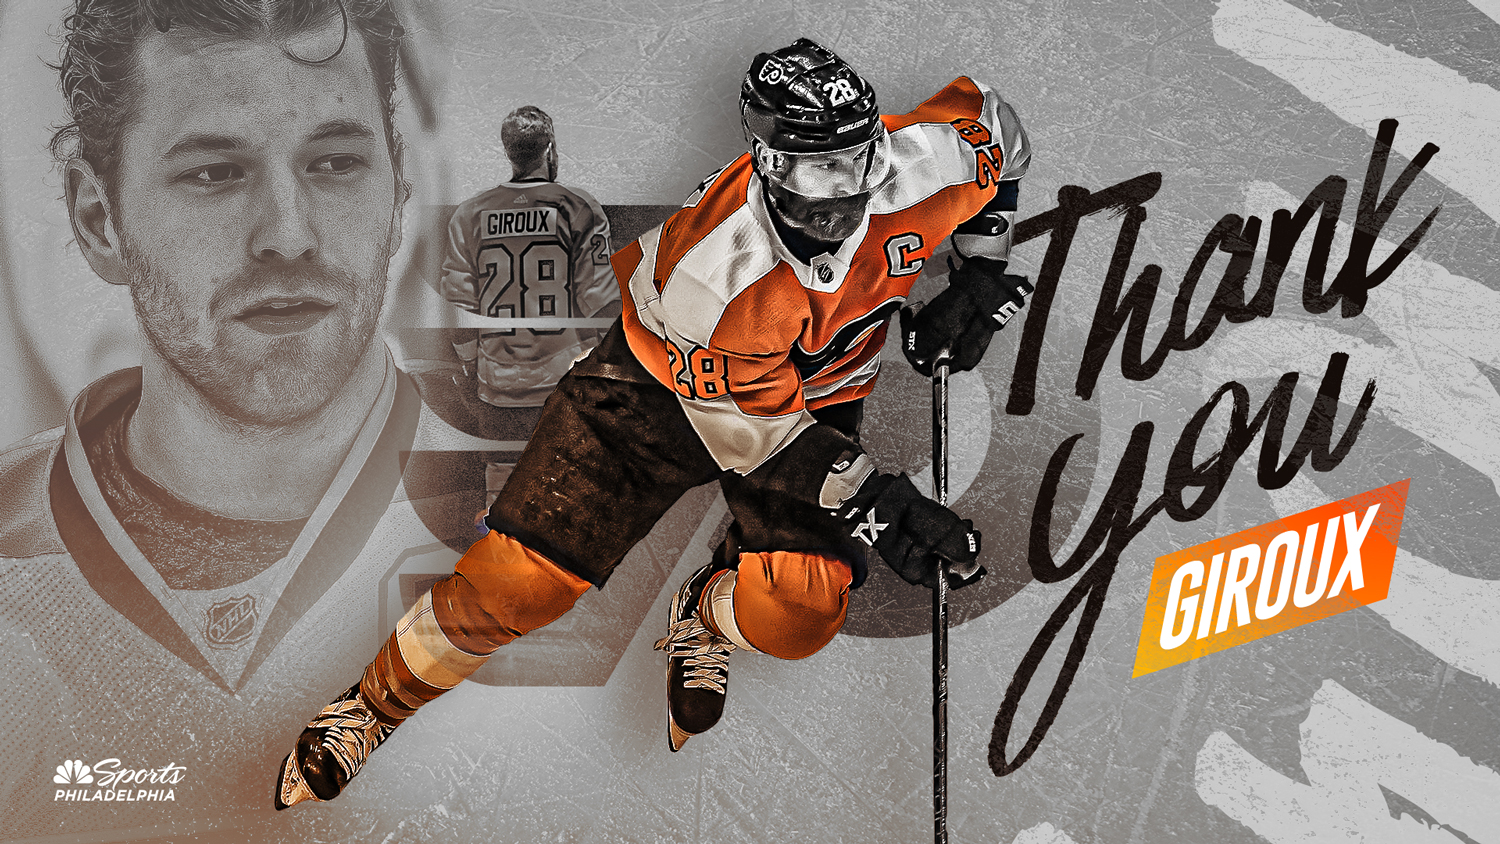 Philadelphia Flyers: The Claude Giroux trade ends an era